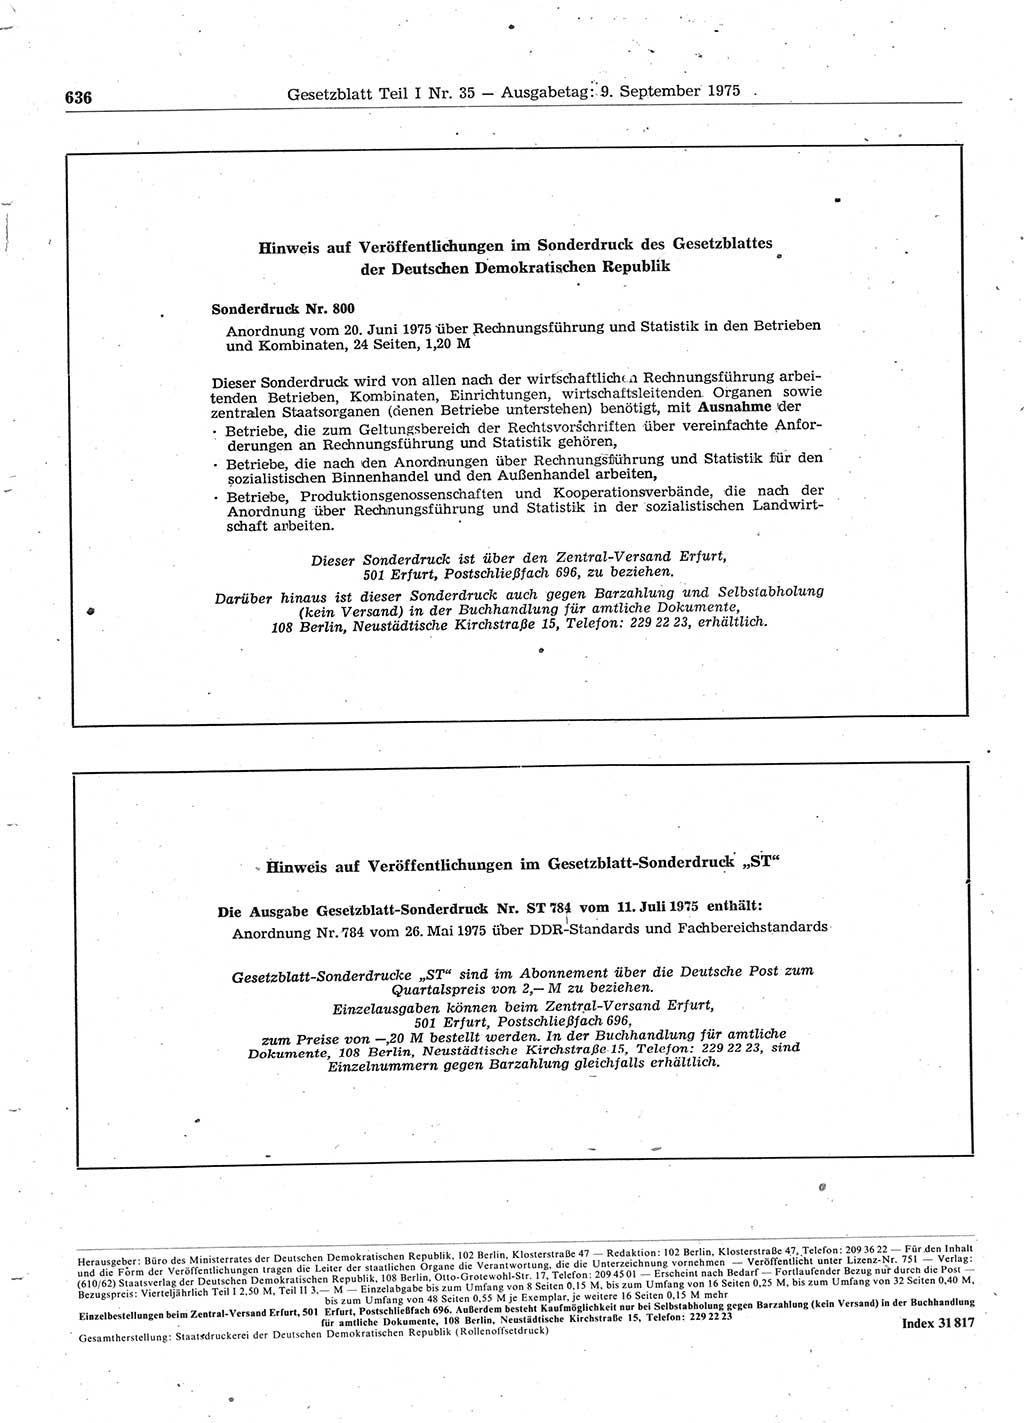 Gesetzblatt (GBl.) der Deutschen Demokratischen Republik (DDR) Teil Ⅰ 1975, Seite 636 (GBl. DDR Ⅰ 1975, S. 636)